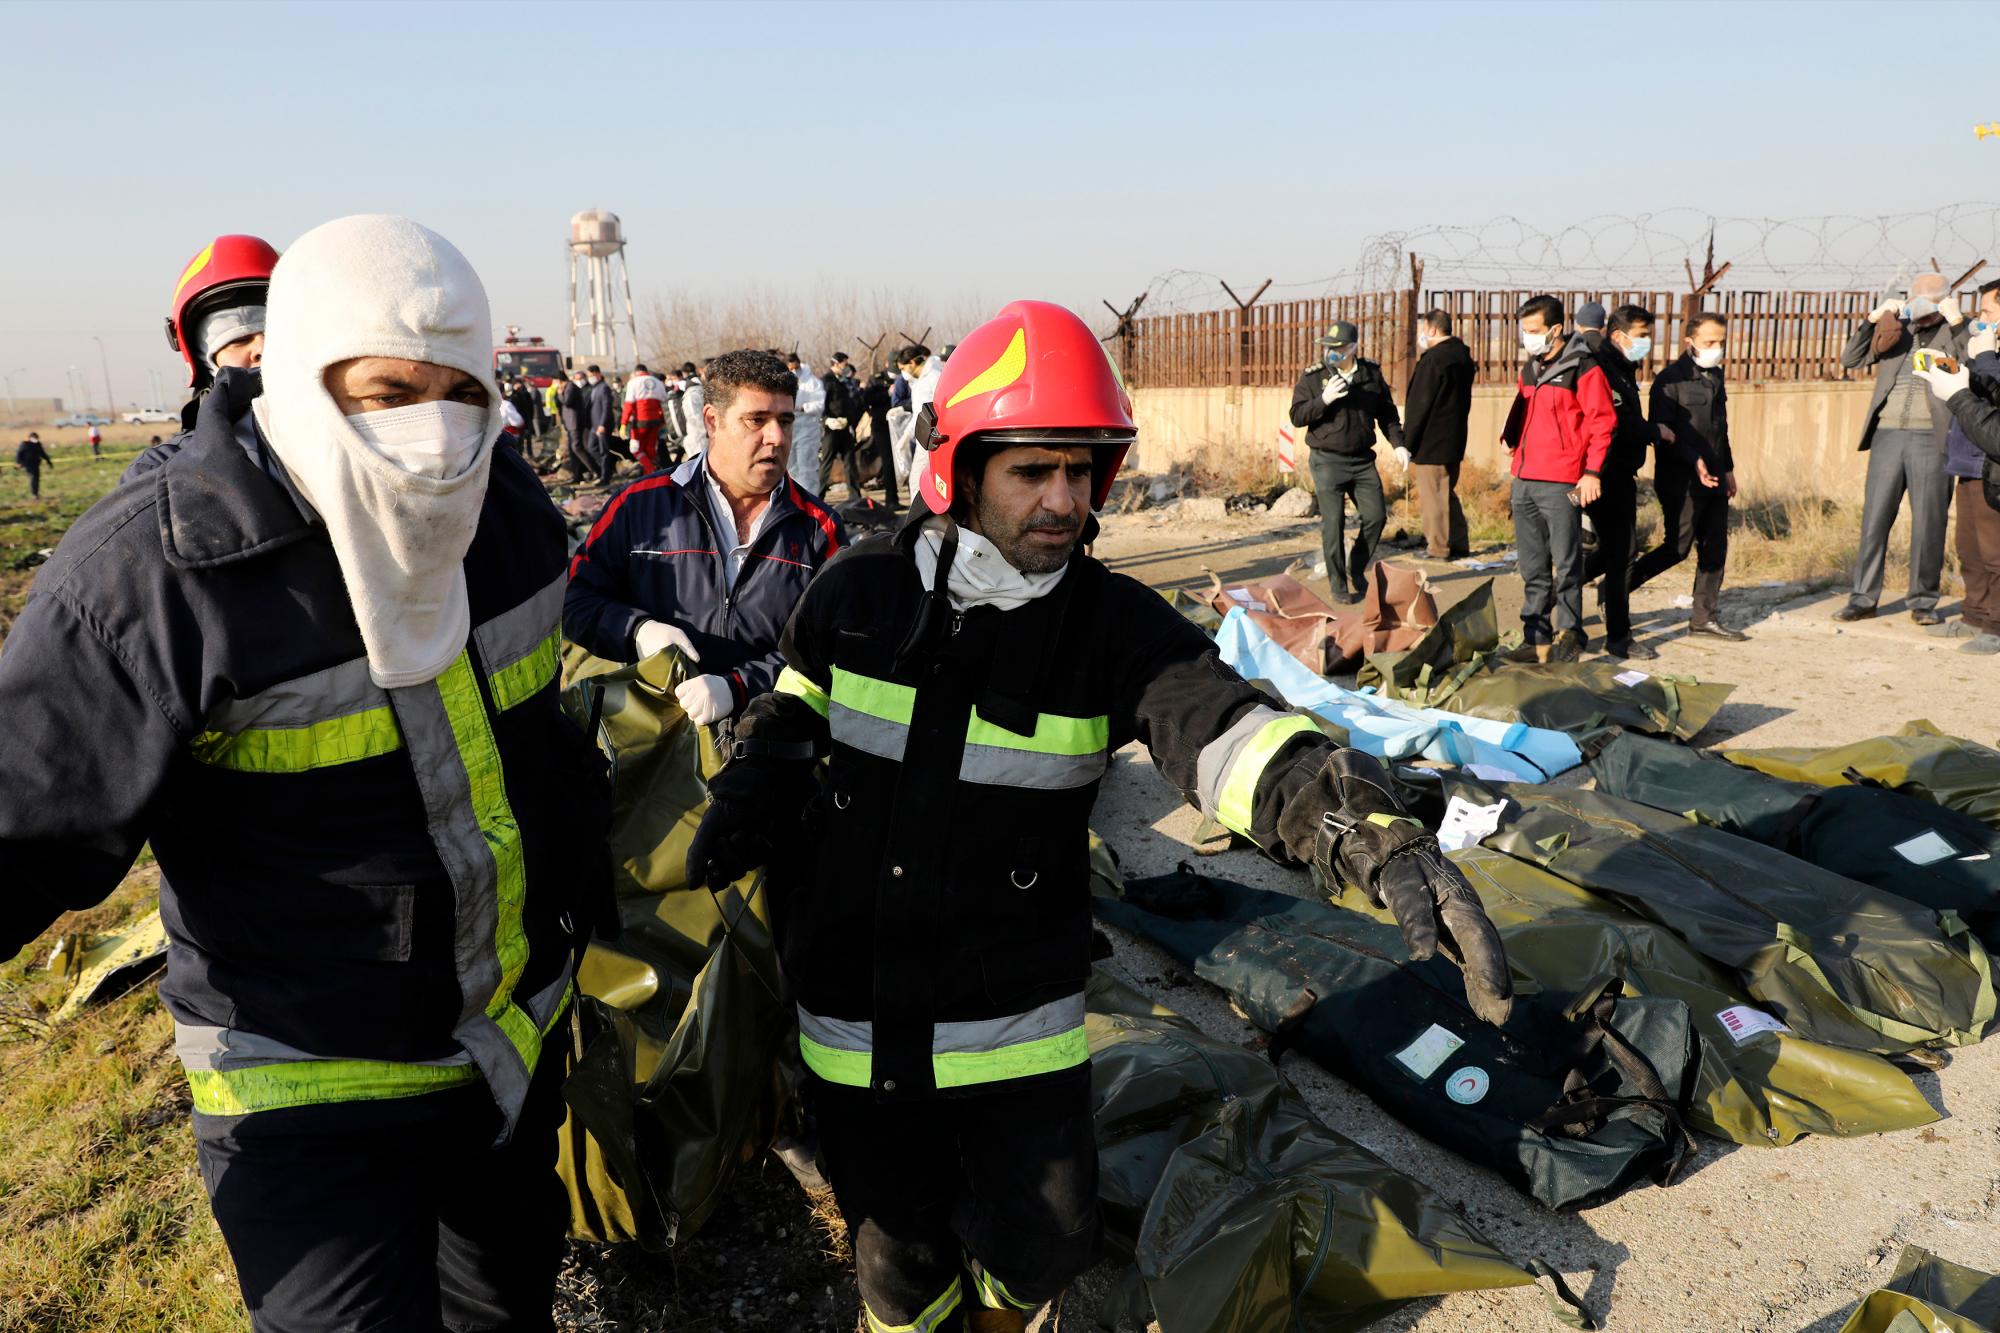 Los equipos de rescate llevan el cuerpo de una víctima de un accidente de avión ucraniano en Shahedshahr, suroeste de la capital, Teherán, Irán, el miércoles 8 de enero de 2020. Un avión ucraniano que transportaba a 176 personas se estrelló el miércoles poco después del despegue del aeropuerto principal de Teherán, matando todos a bordo. 